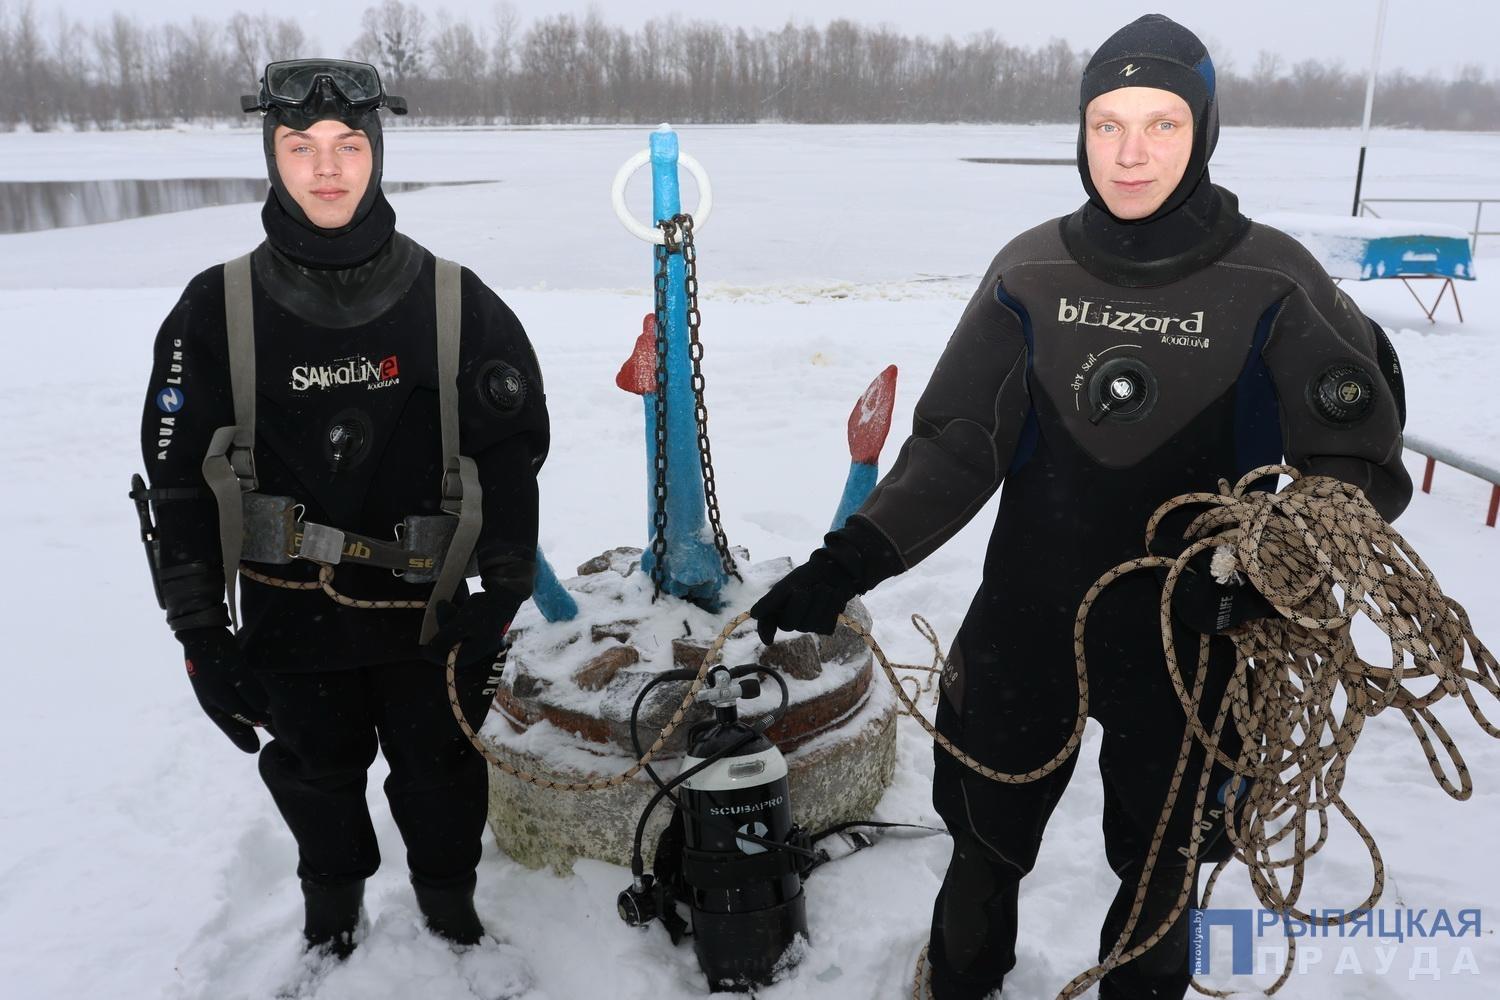 Работники Наровлянской спасательной станции ОСВОД настоящие повелители воды